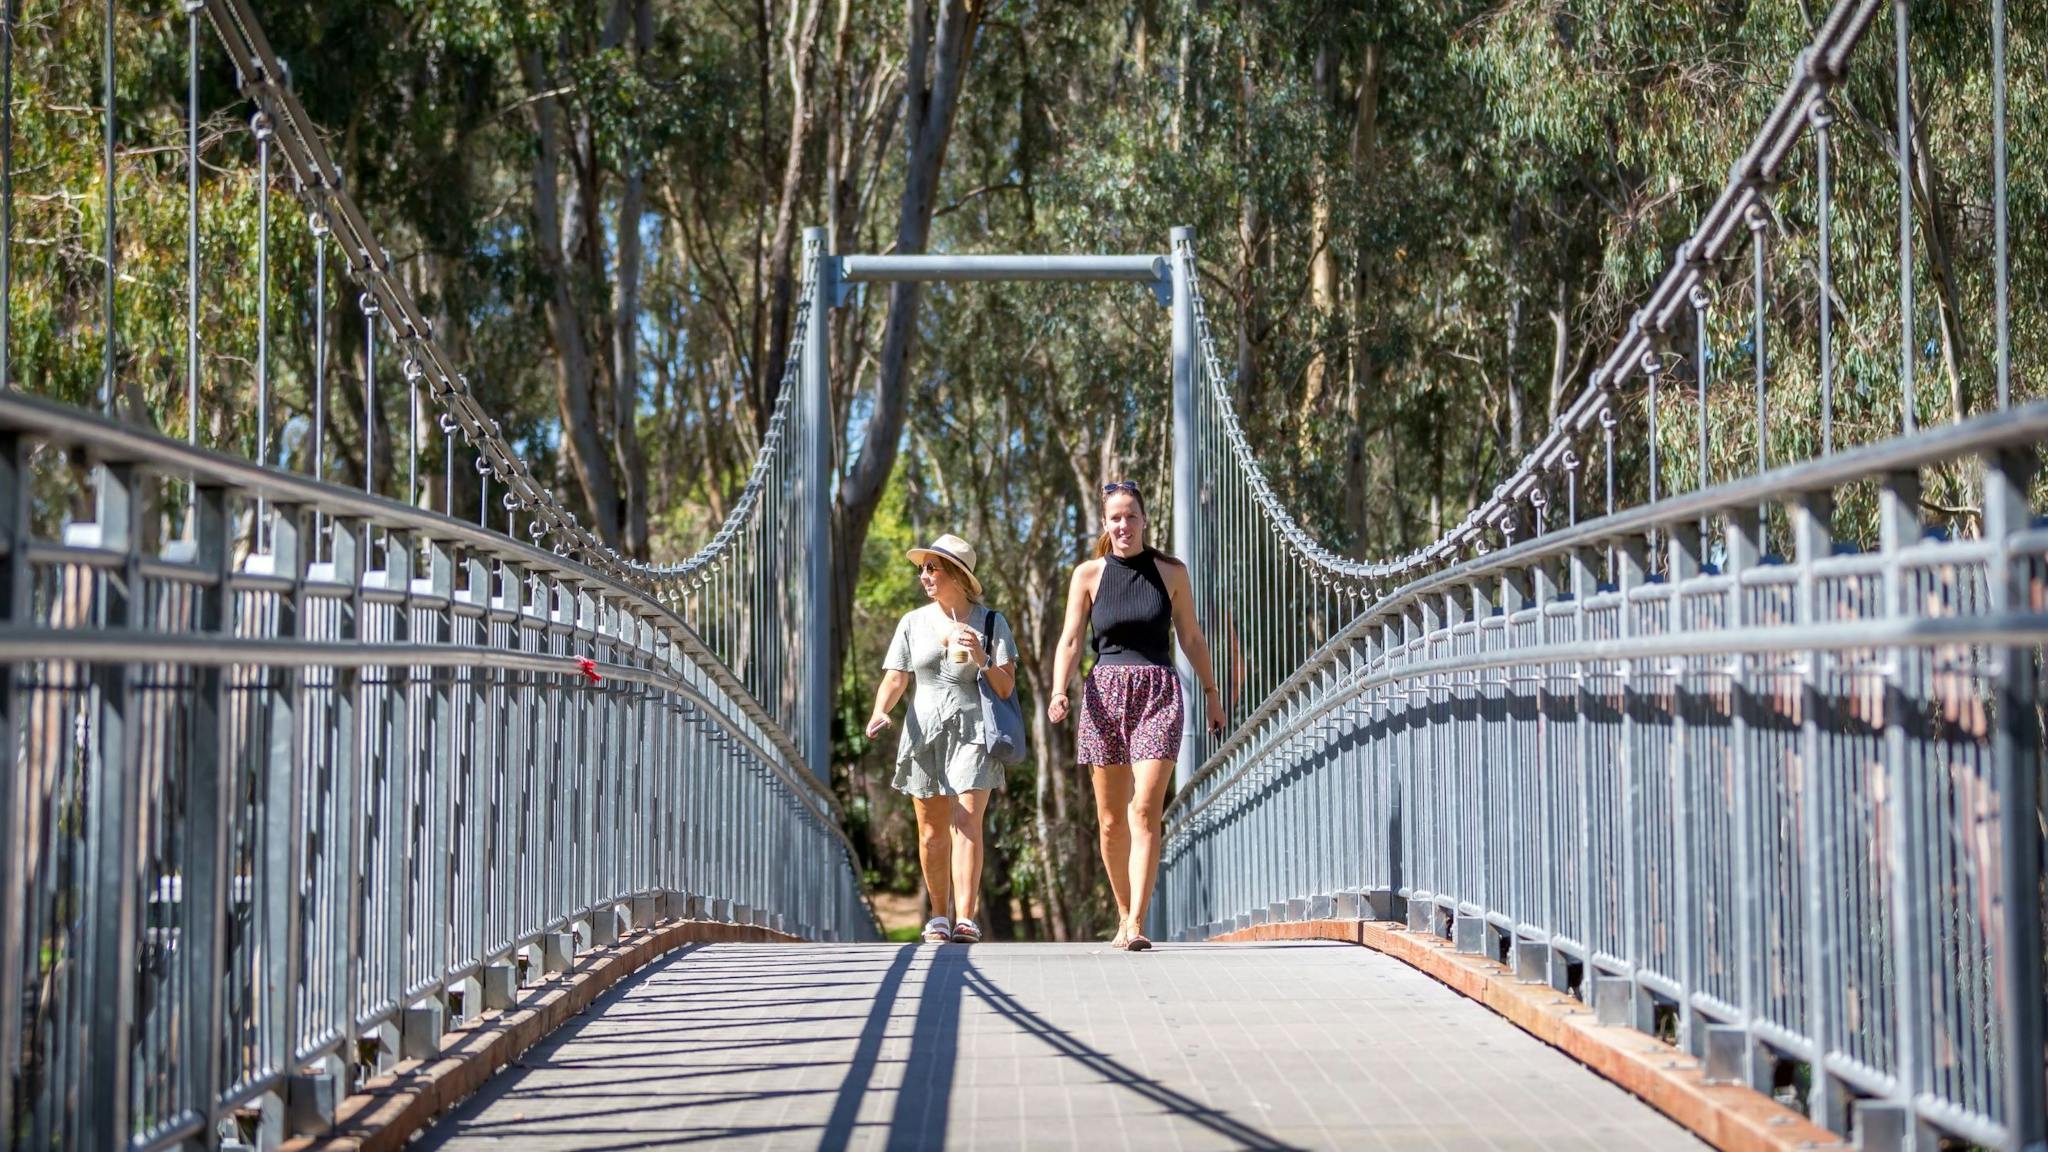 Two walkers walking across swing bridge, trees, sunny day.